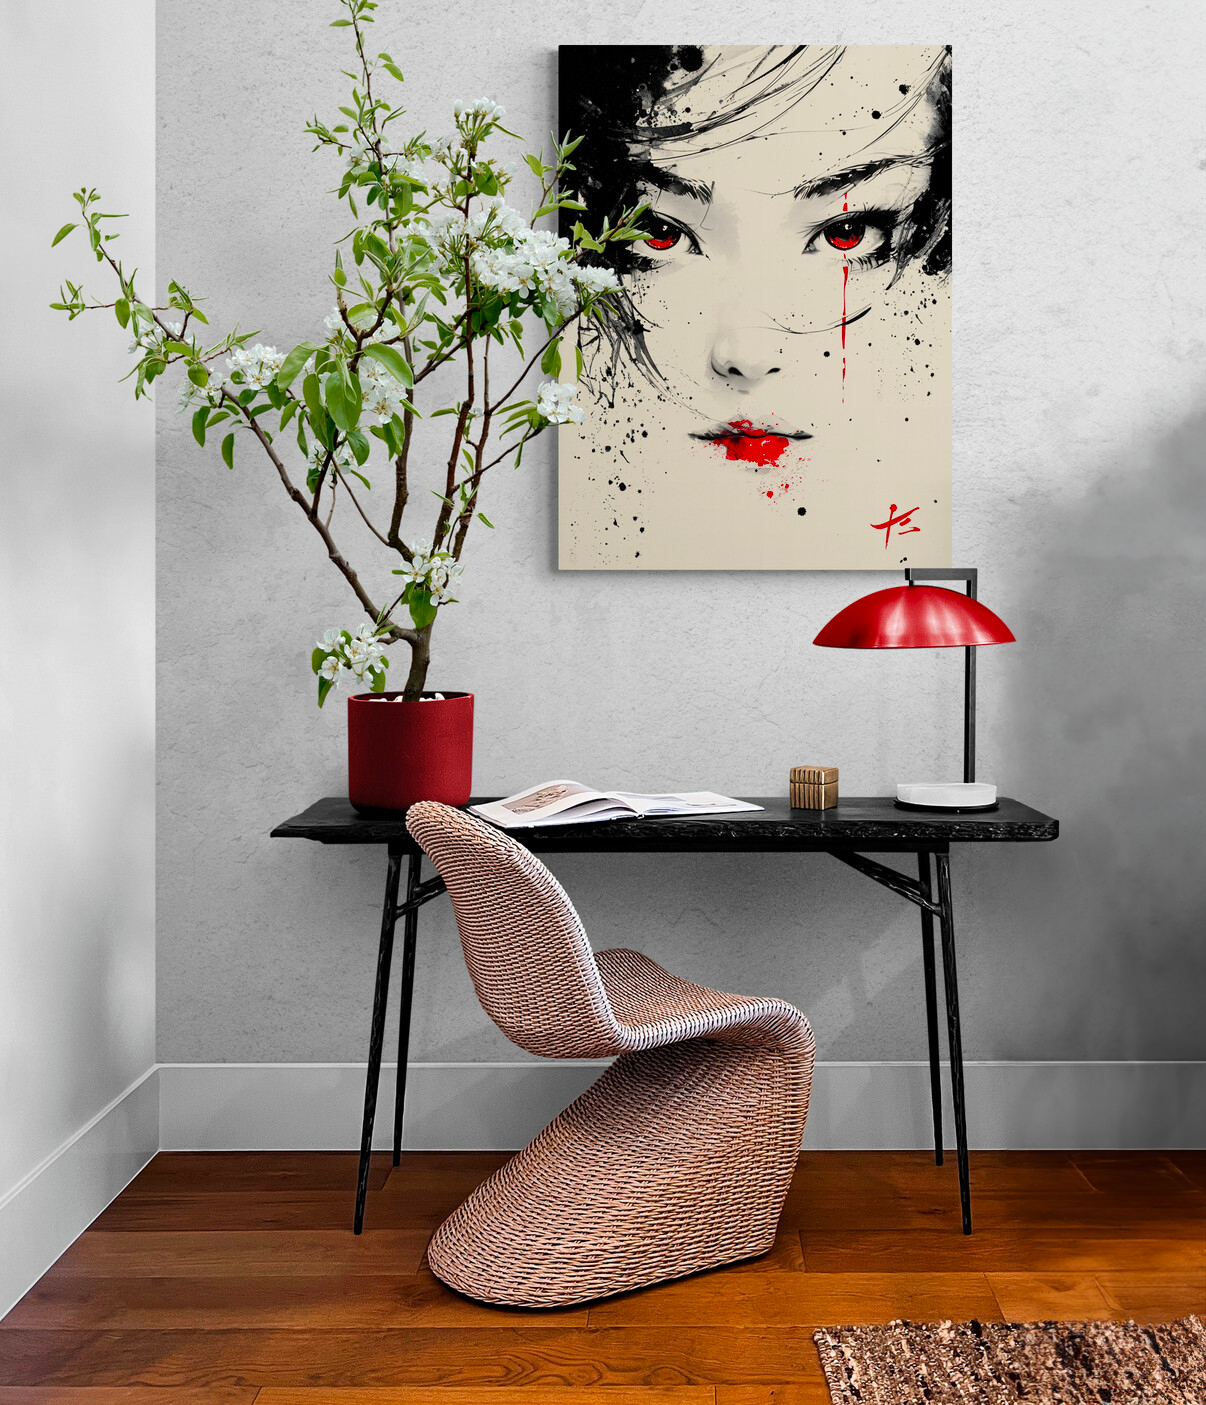 Bureau minimaliste avec tableau de geisha, plante en fleurs et lampe rouge.